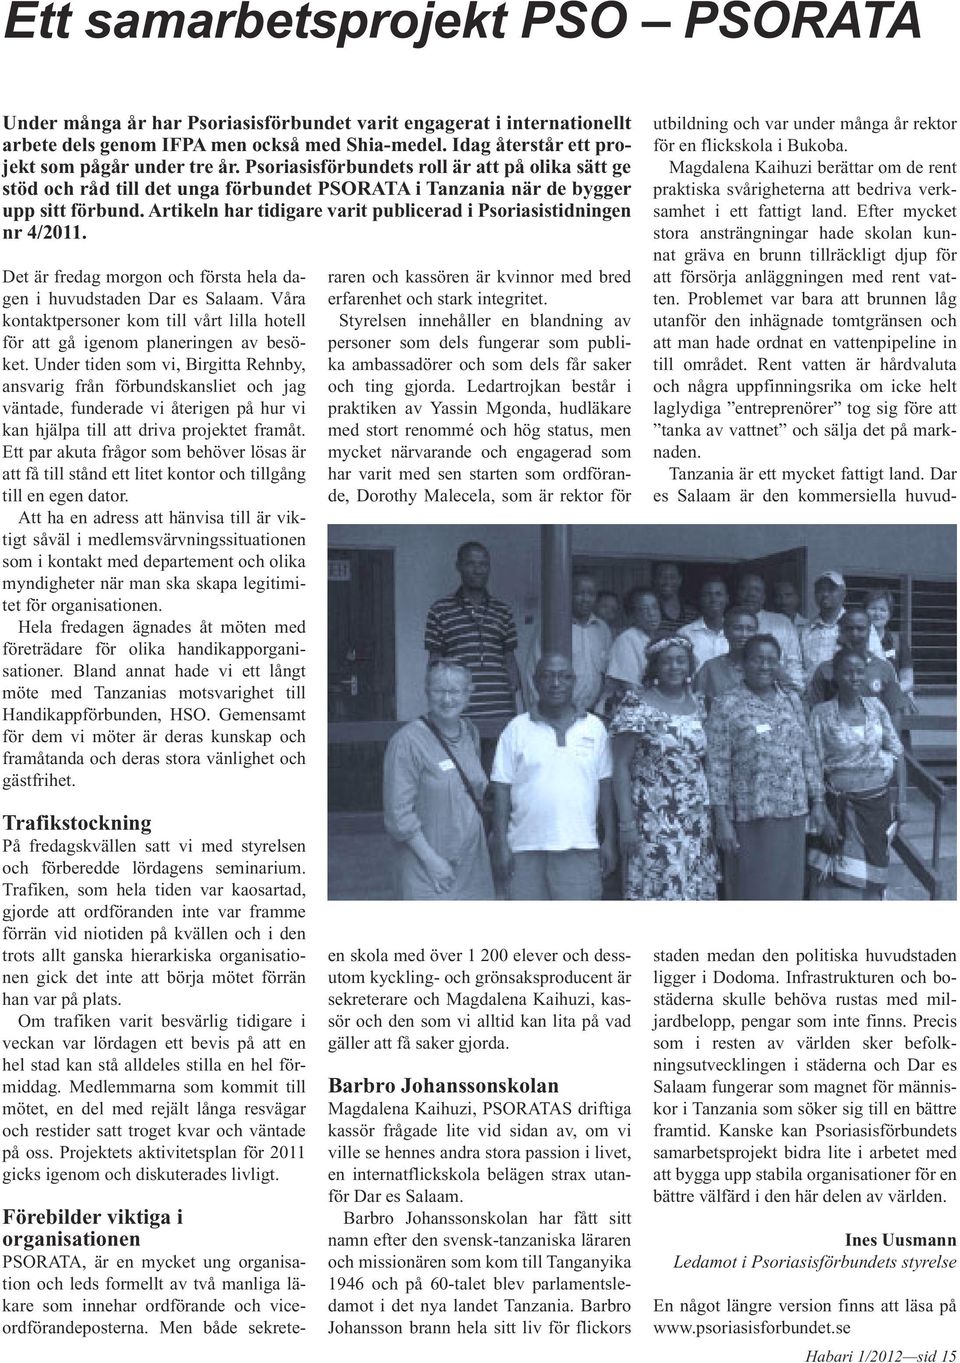 Artikeln har tidigare varit publicerad i Psoriasistidningen nr 4/2011. Det är fredag morgon och första hela dagen i huvudstaden Dar es Salaam.